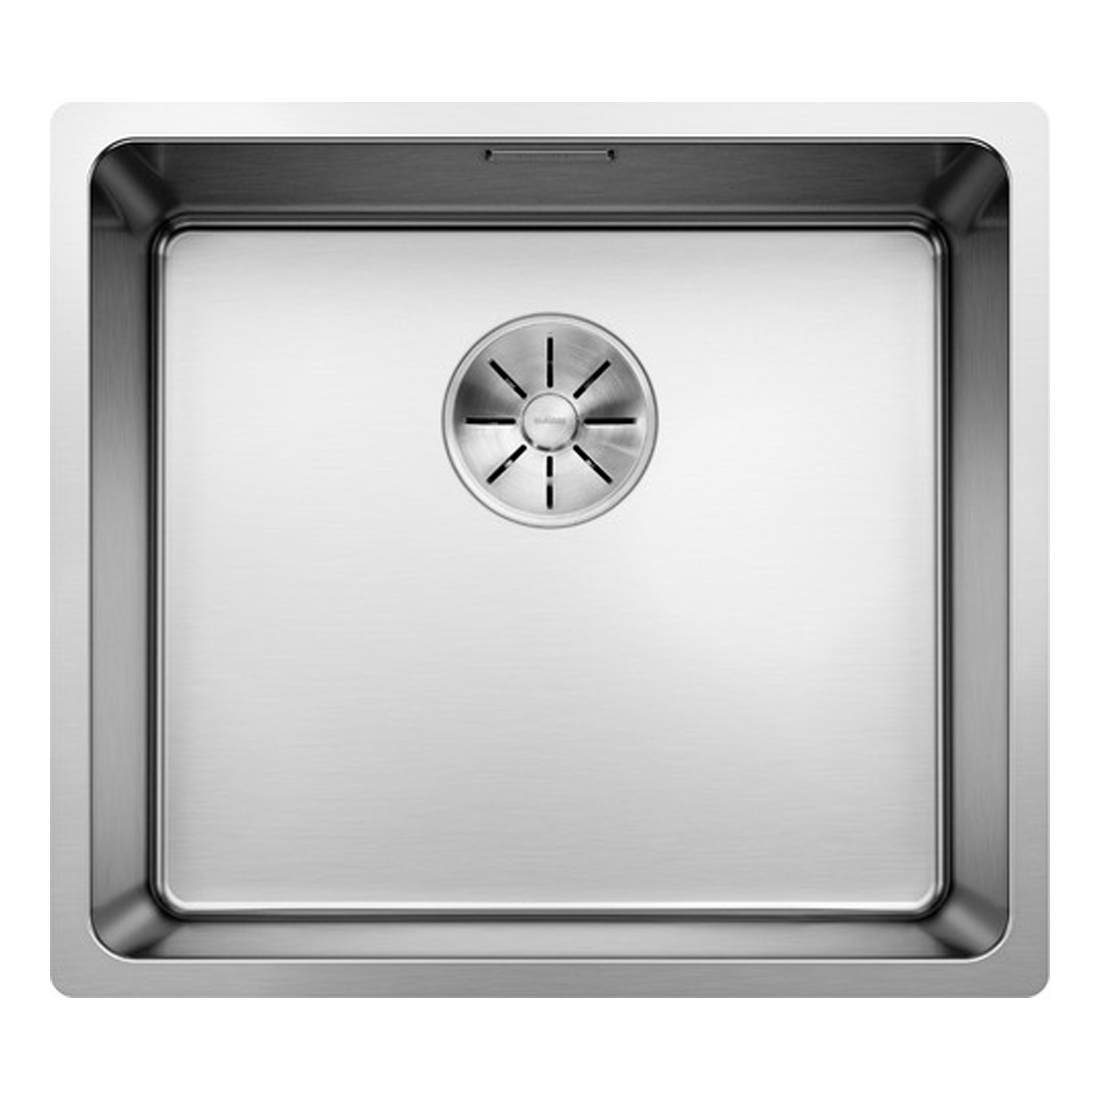 Кухонная мойка Blanco Andano 450-U полированная сталь кухонная мойка blanco claron 550 if зеркальная полировка